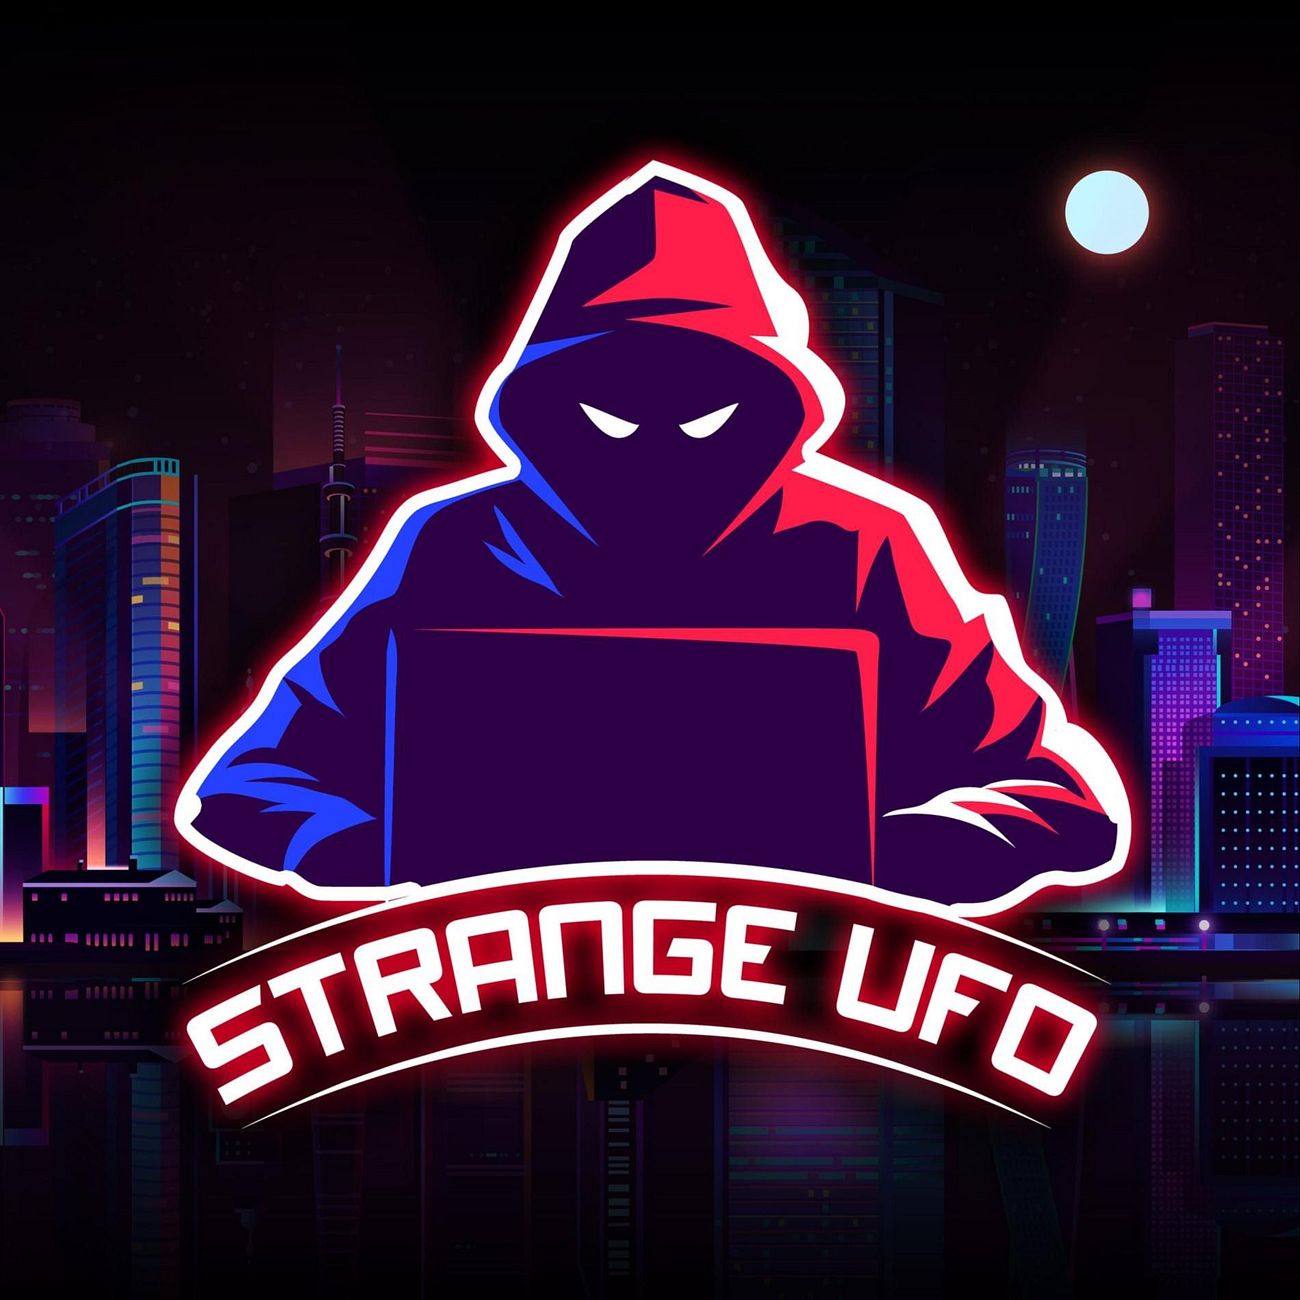 STRANGE UFO